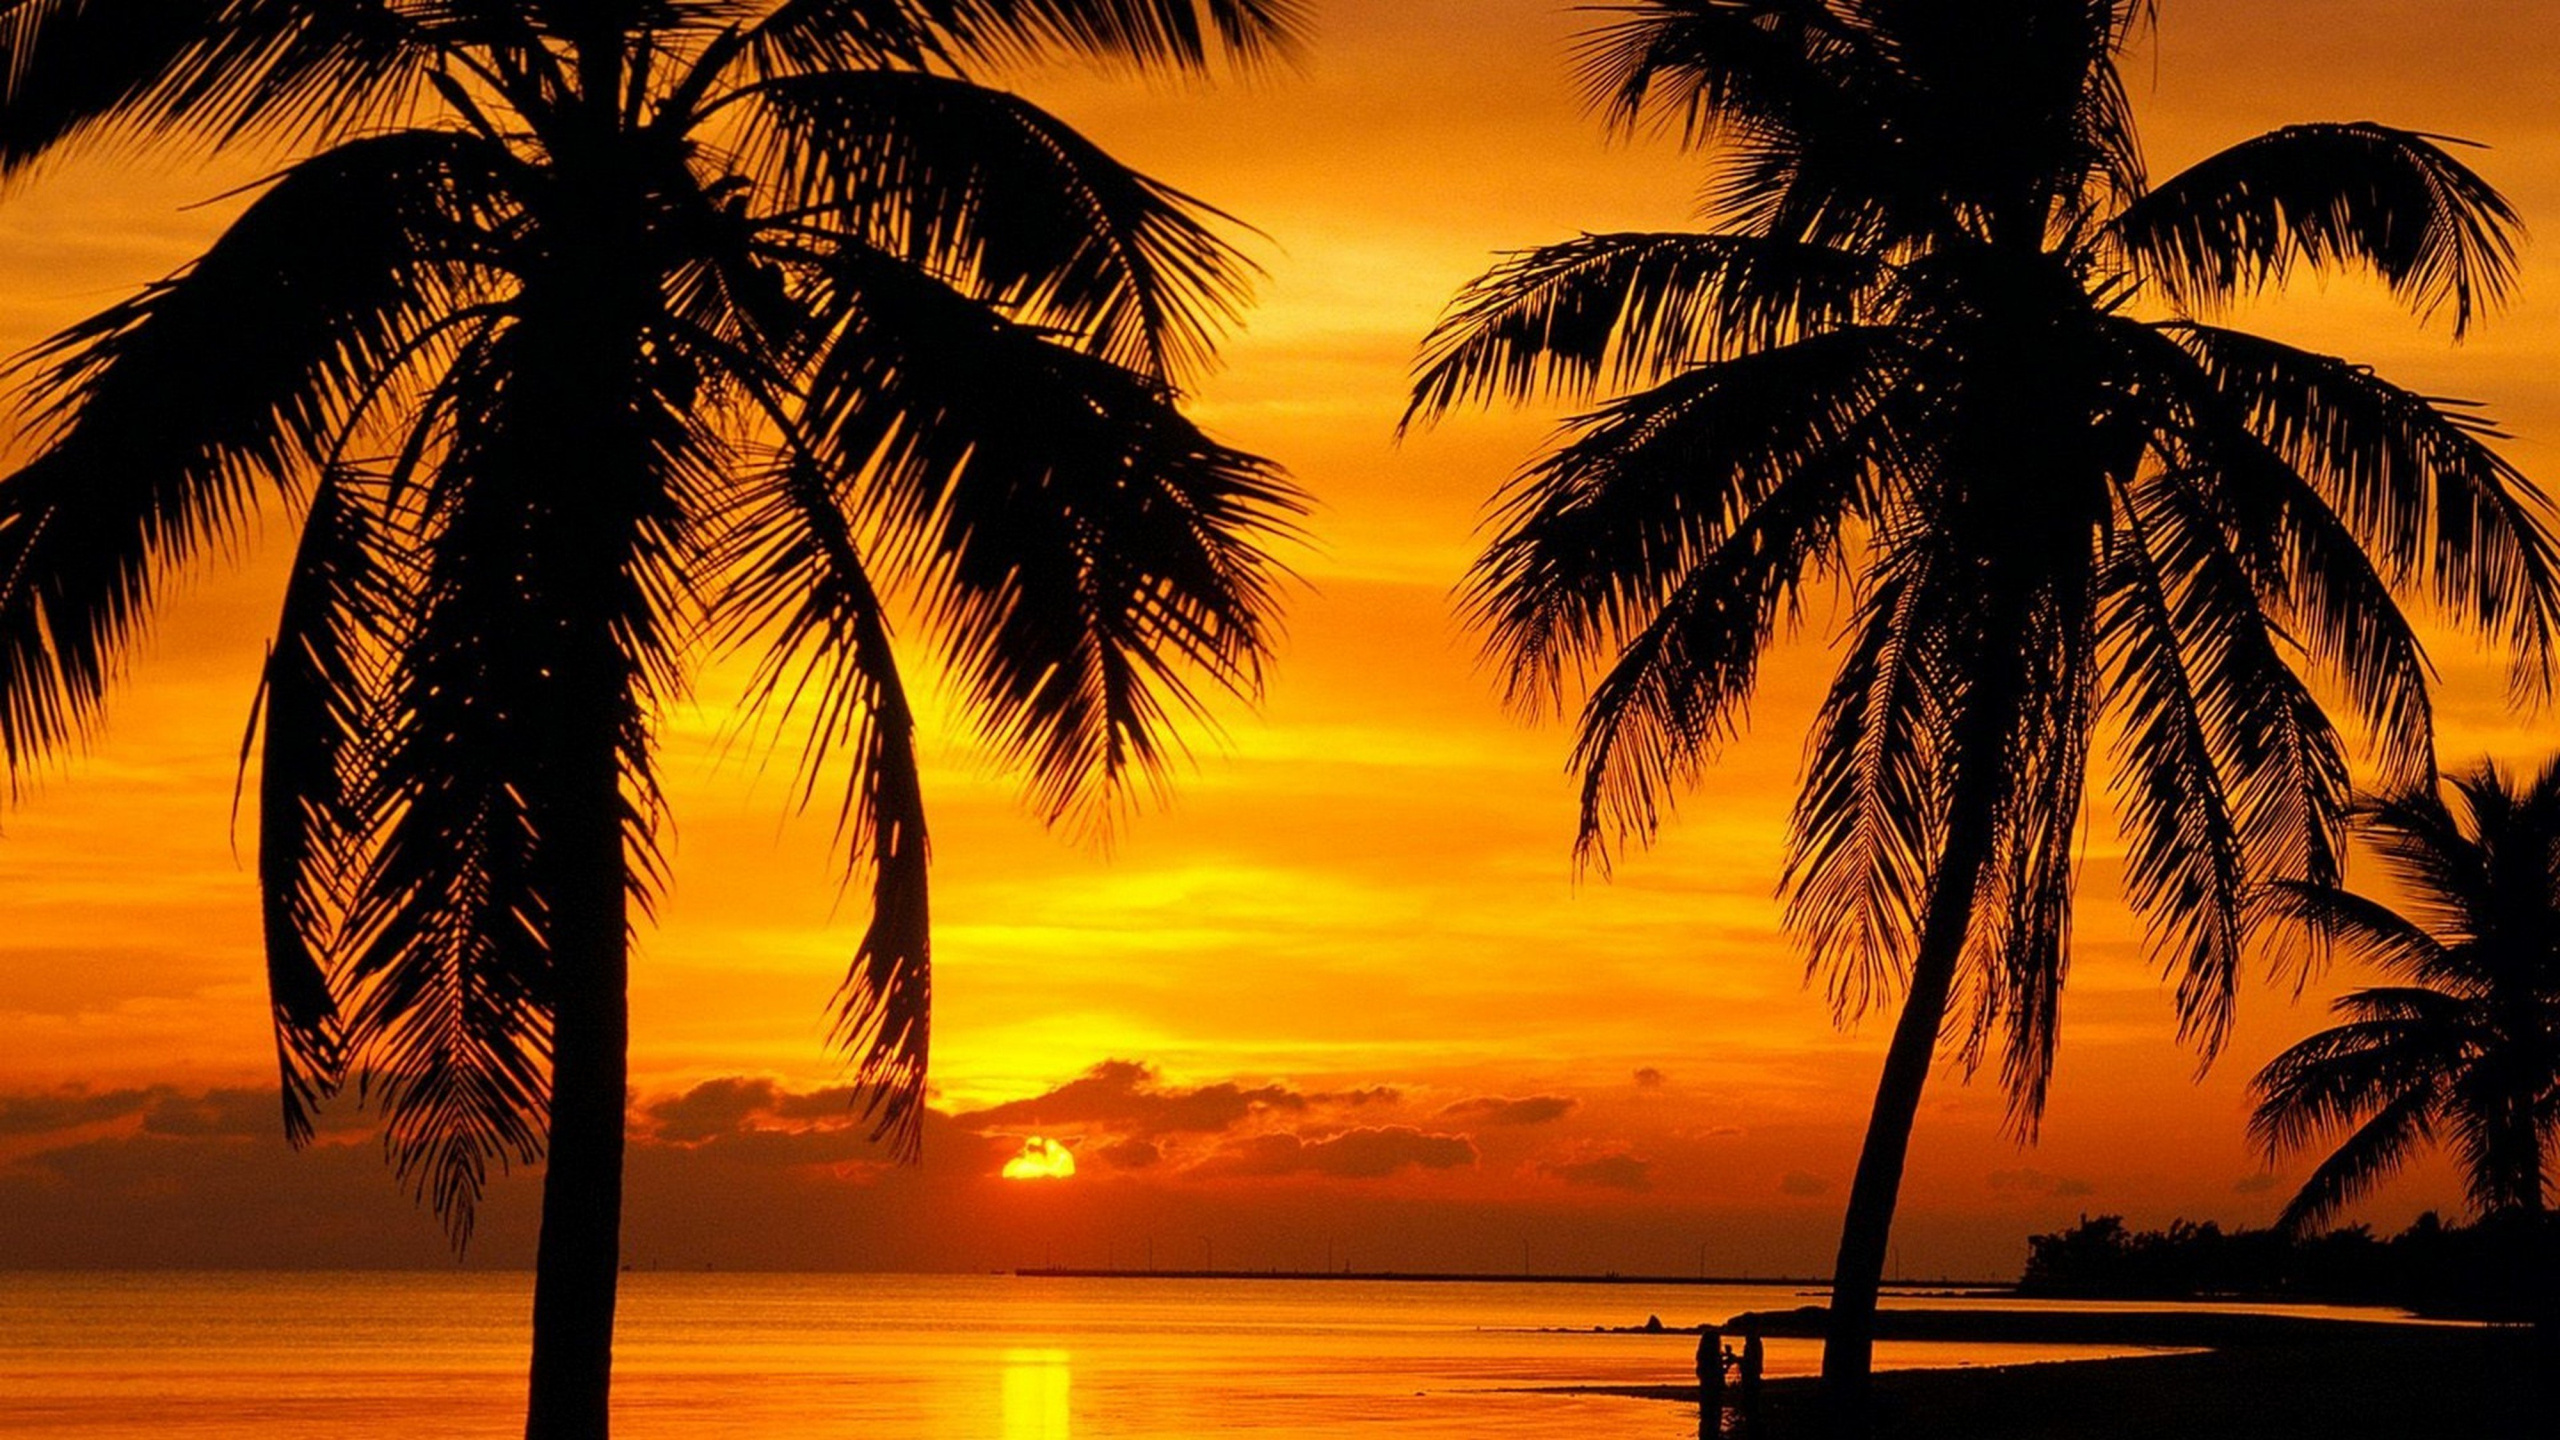 热带地区, 日落, 晚上, 早上, 加勒比 壁纸 2560x1440 允许